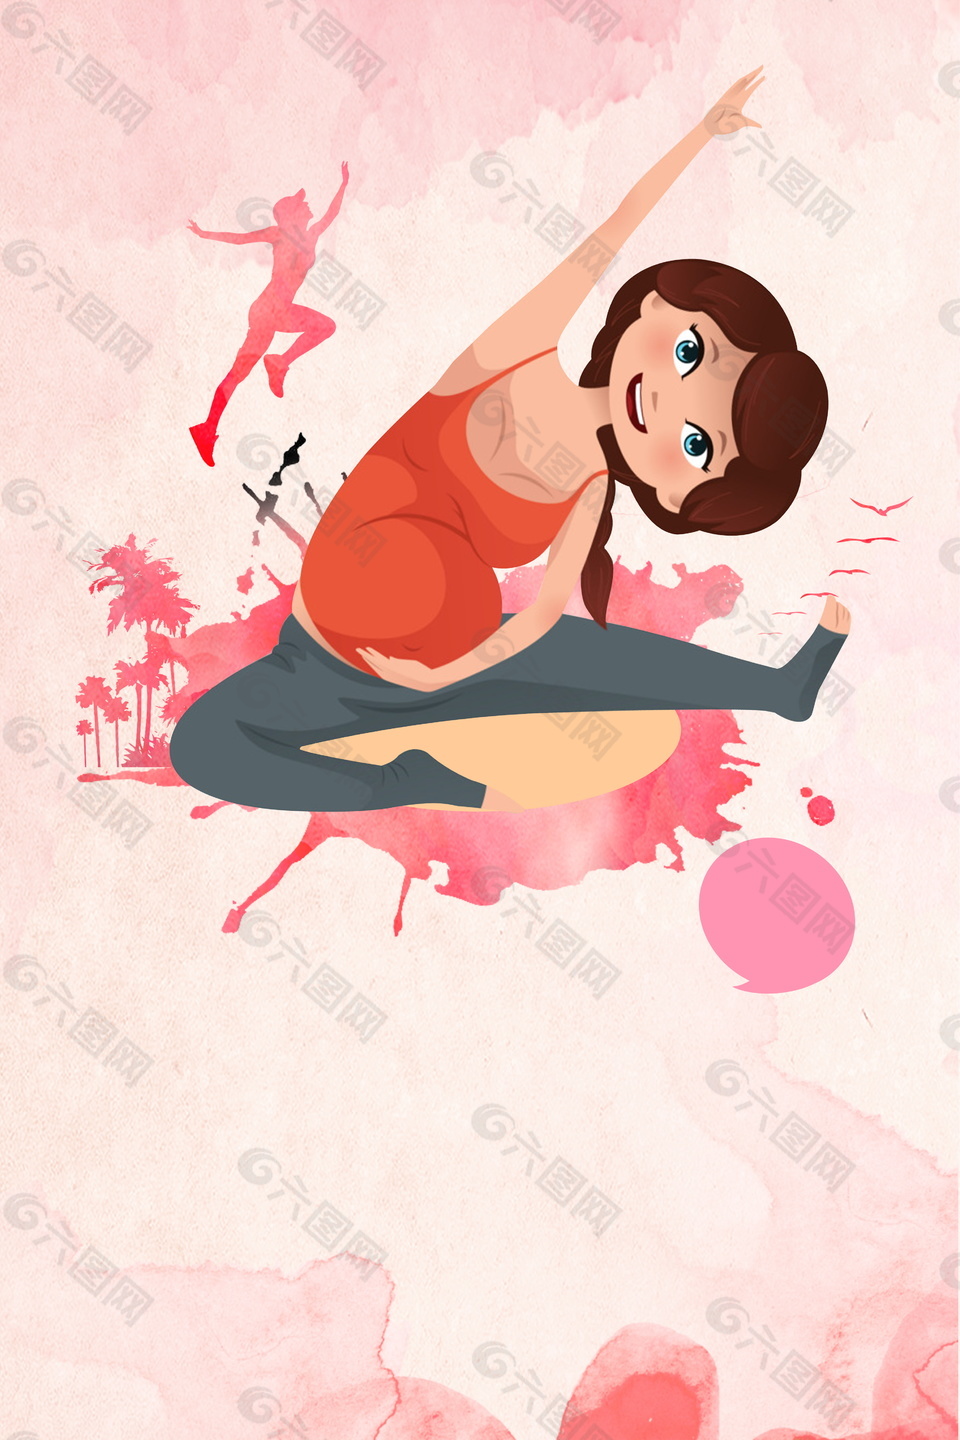 彩绘卡通孕妇瑜伽广告背景素材